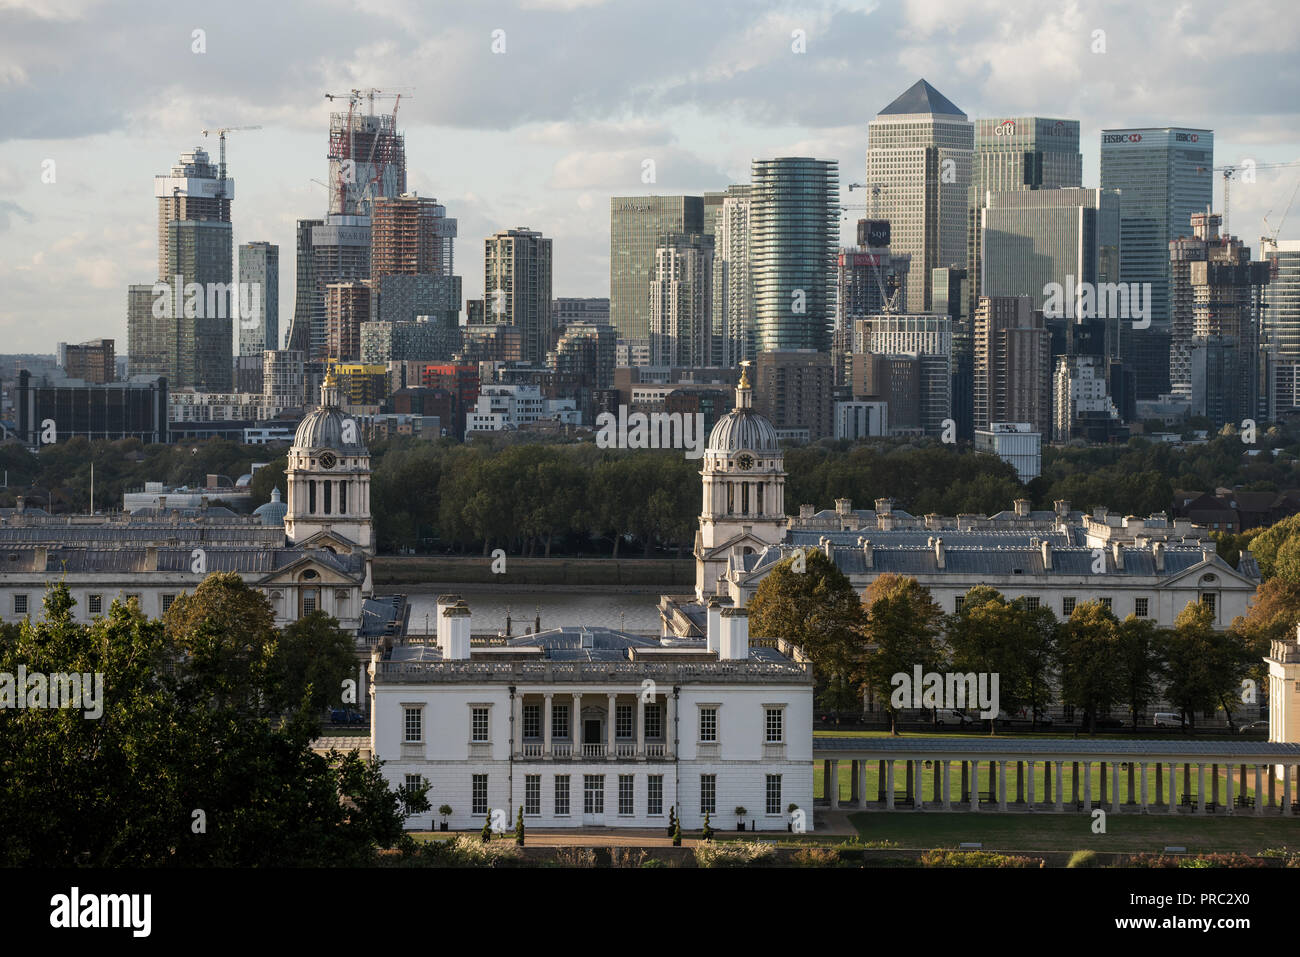 Londra Panorama dal parco di Greenwich, in Inghilterra, Regno Unito. 22 settembre 2018 XX e XXI cntury Canary Wharf città finanziaria complessa a L'Isle of Dogs in Towe Foto Stock